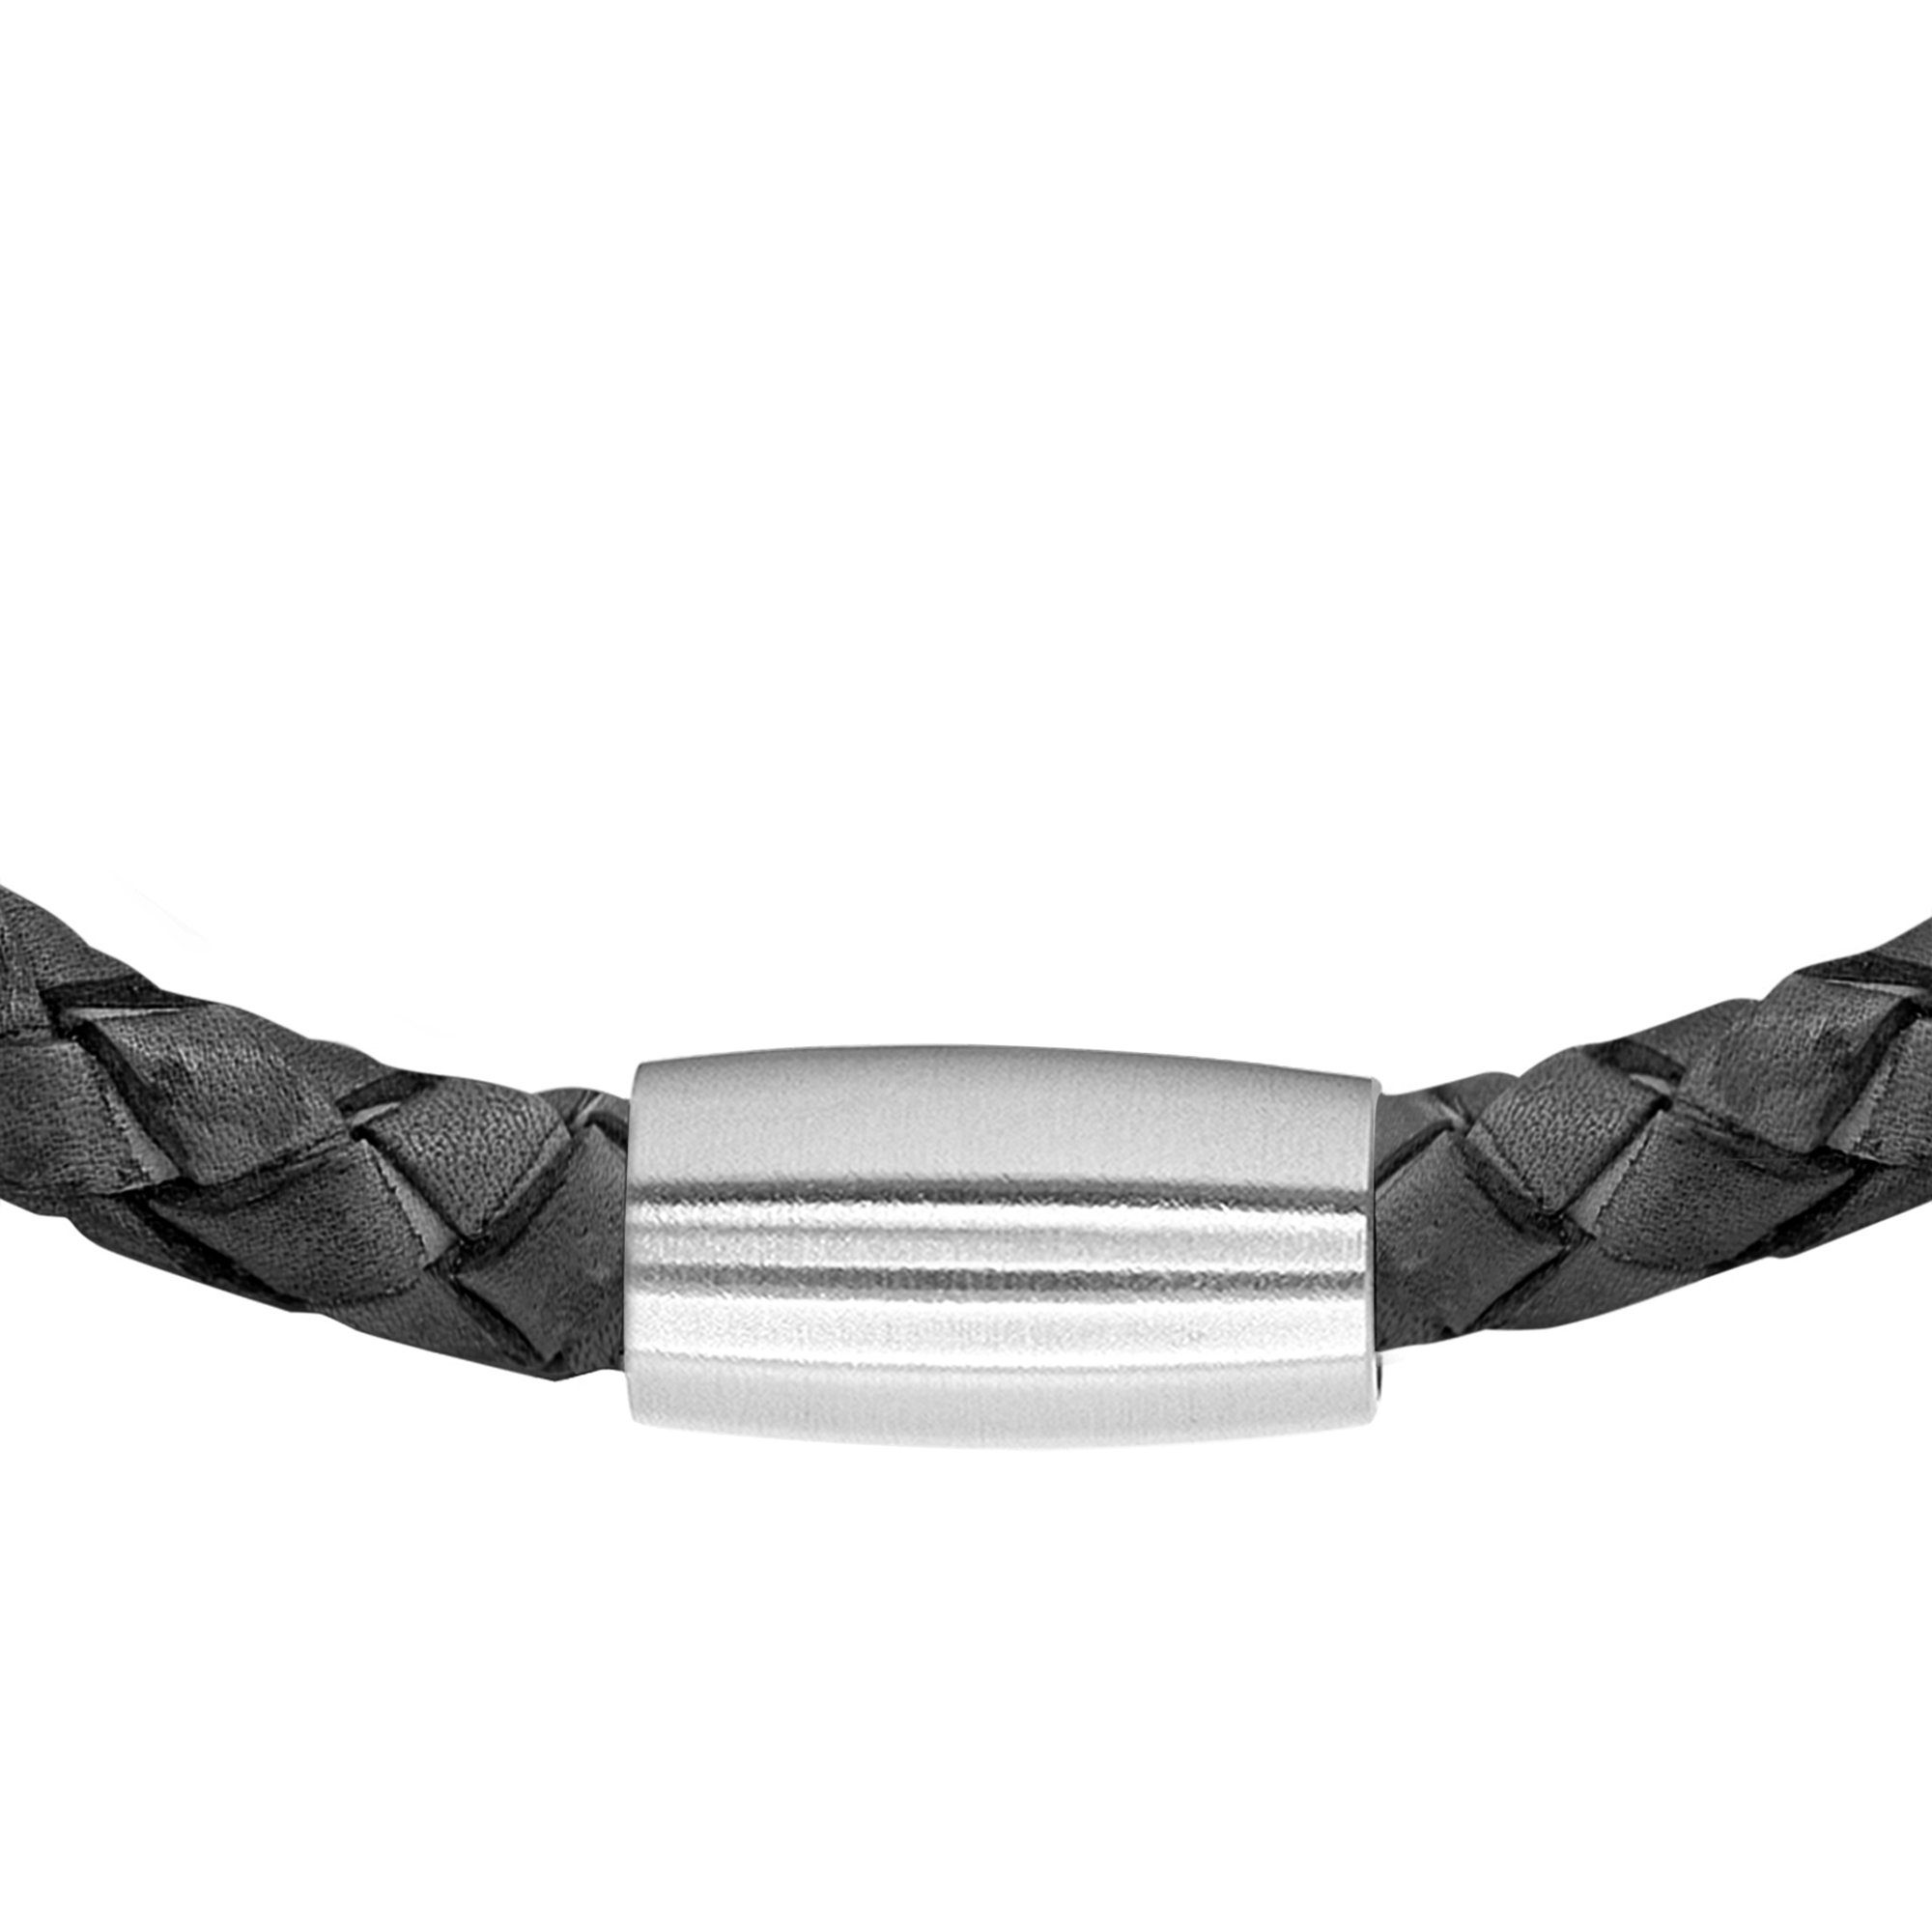 Lederarmband Männerarmband, Echtlederarmband, inkl. Heideman Geschenkverpackung), Männerlederarmband (Armband, Armband Jaron schwarz